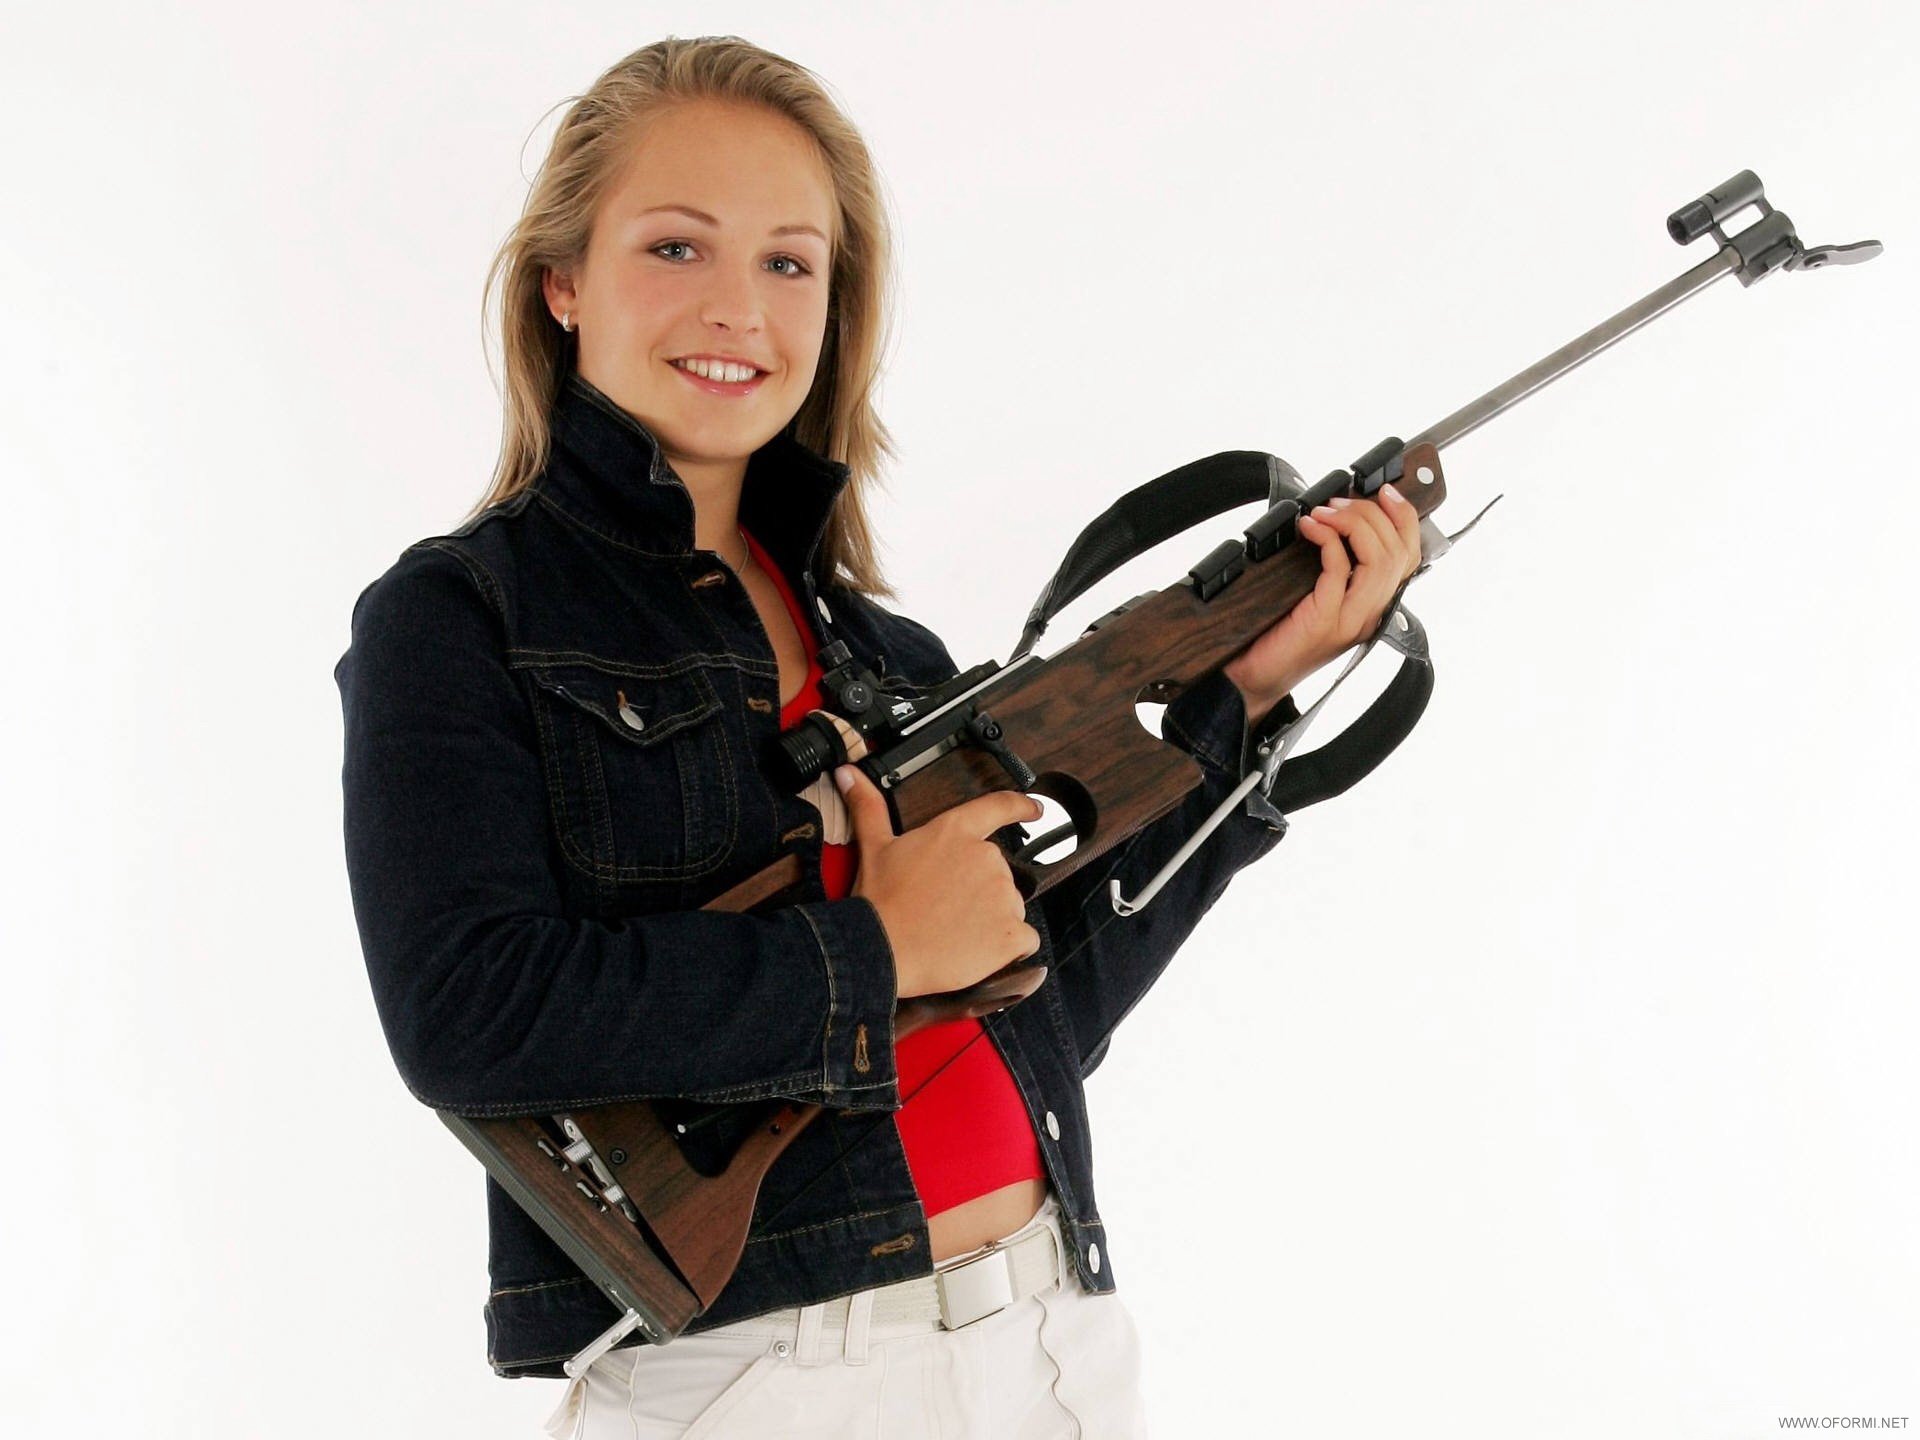 Магдалена Нойнер с винтовкой